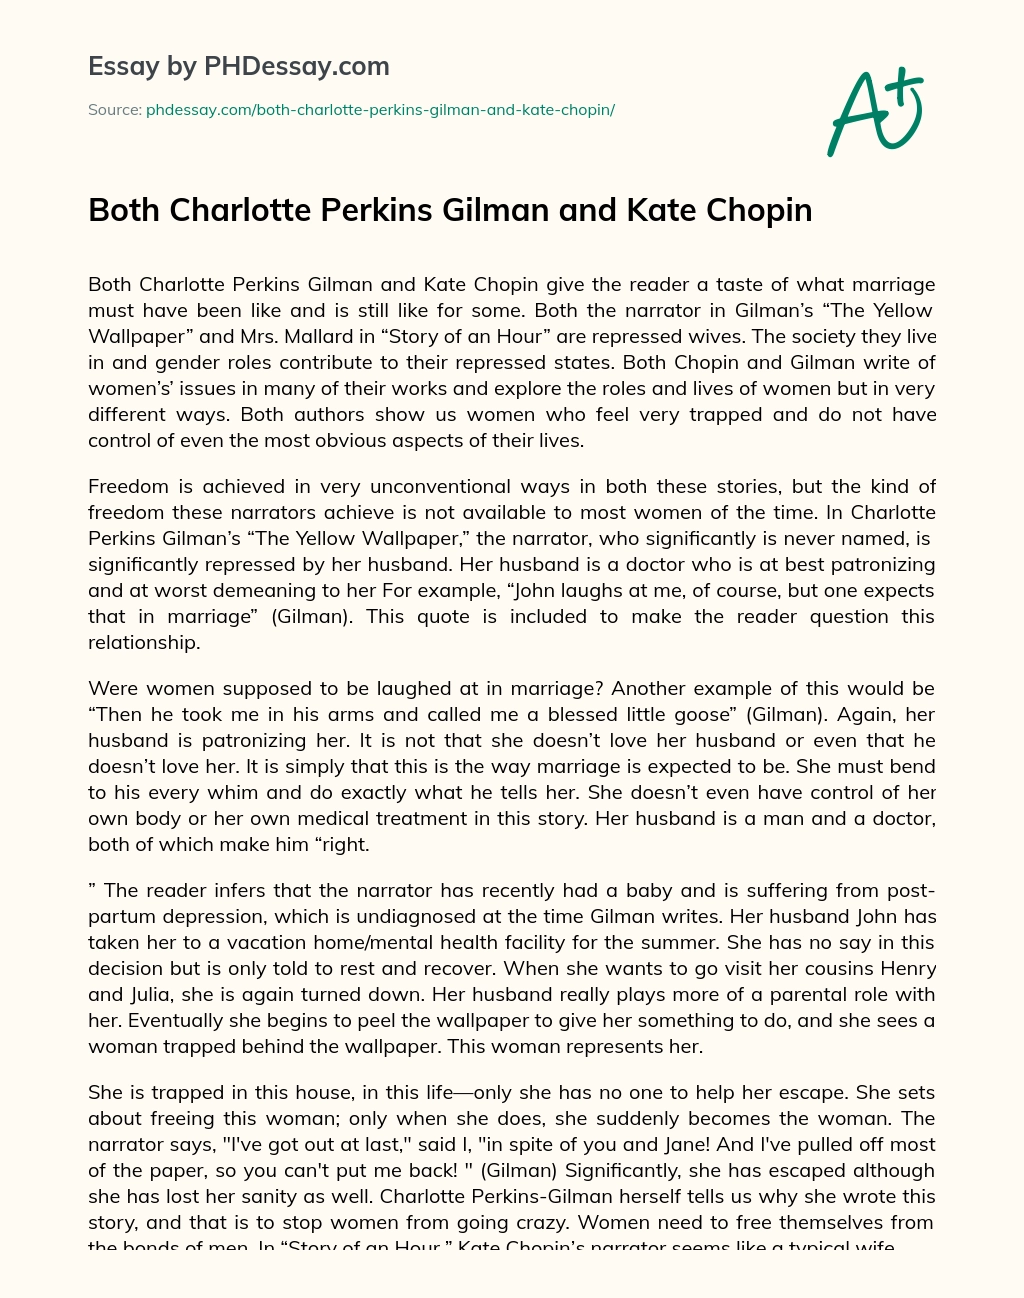 Both Charlotte Perkins Gilman and Kate Chopin essay